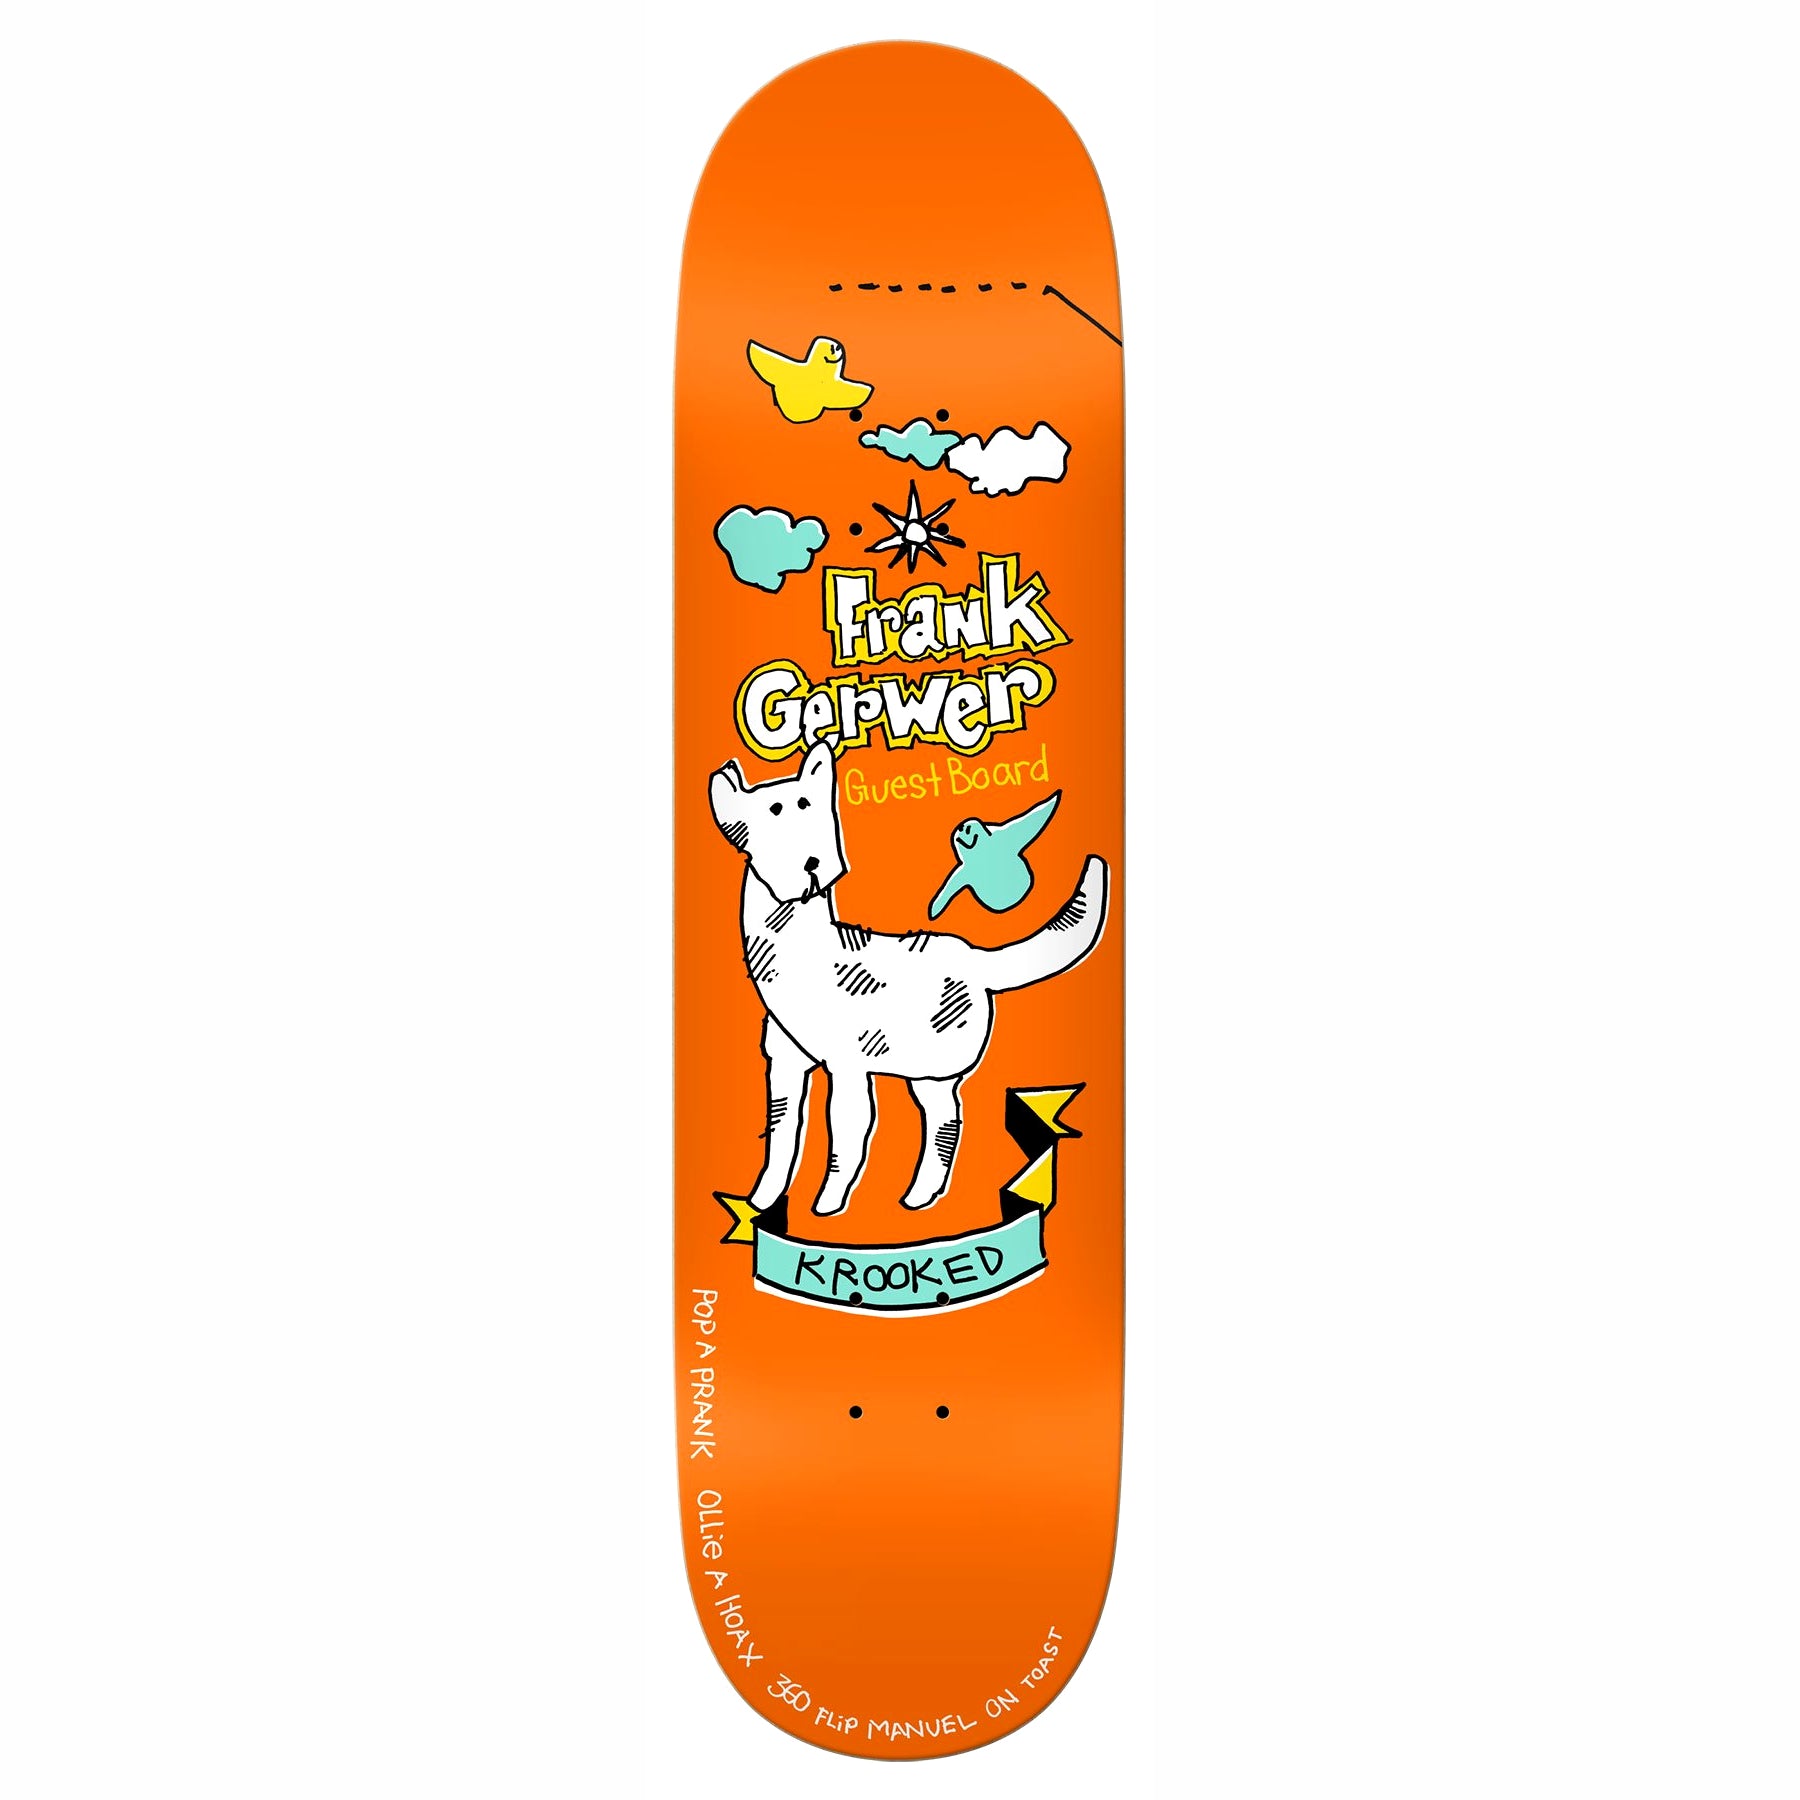 Frank Grewer Guest Pro Model Krooked Skateboards